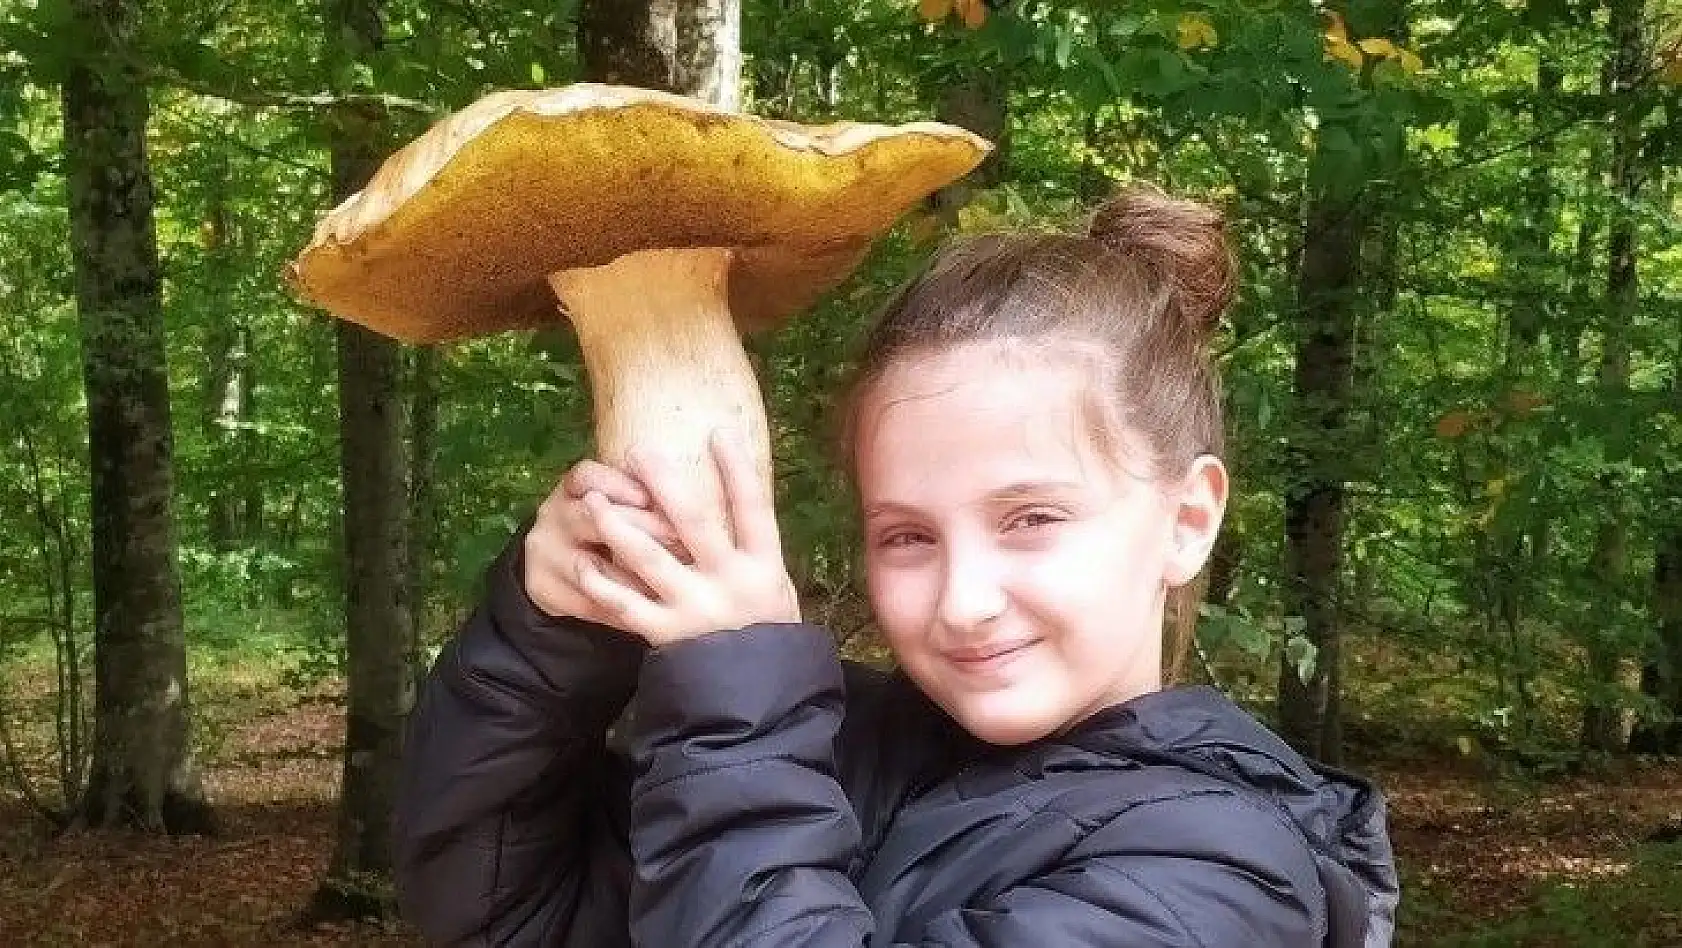 (Özel) Mantar avcısı minik kız 2 kiloluk dev mantar buldu